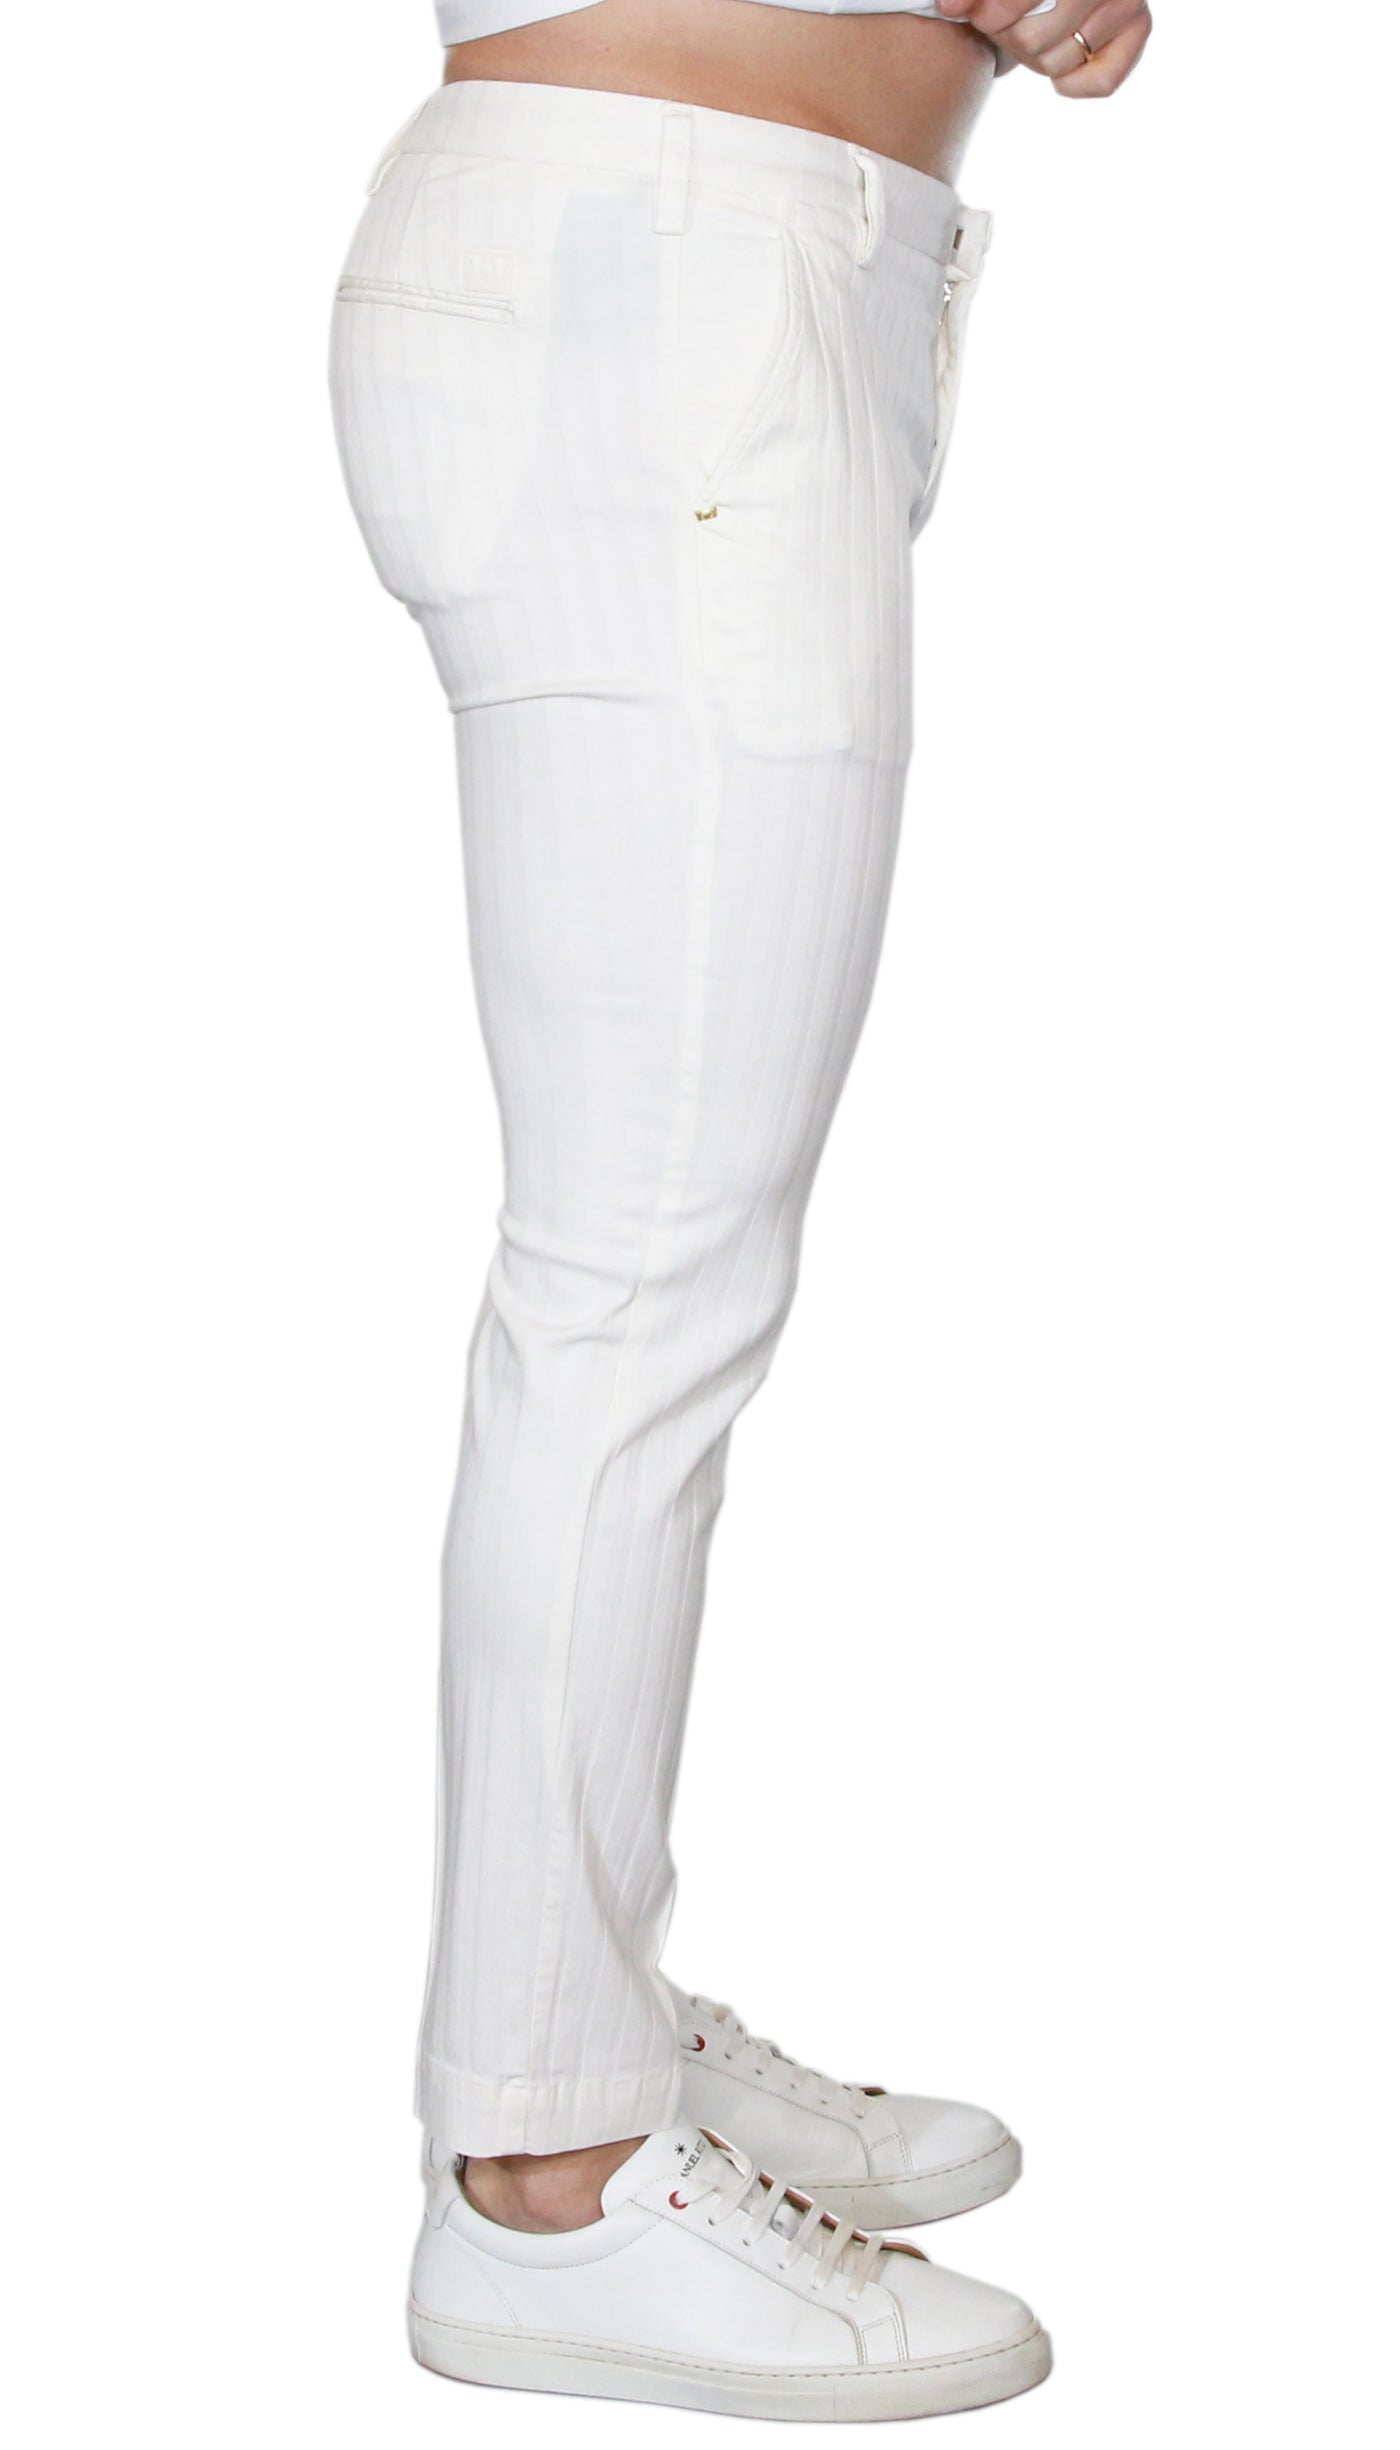 Entre Amis Pantalone corto bianco in cotone motivo rigato.